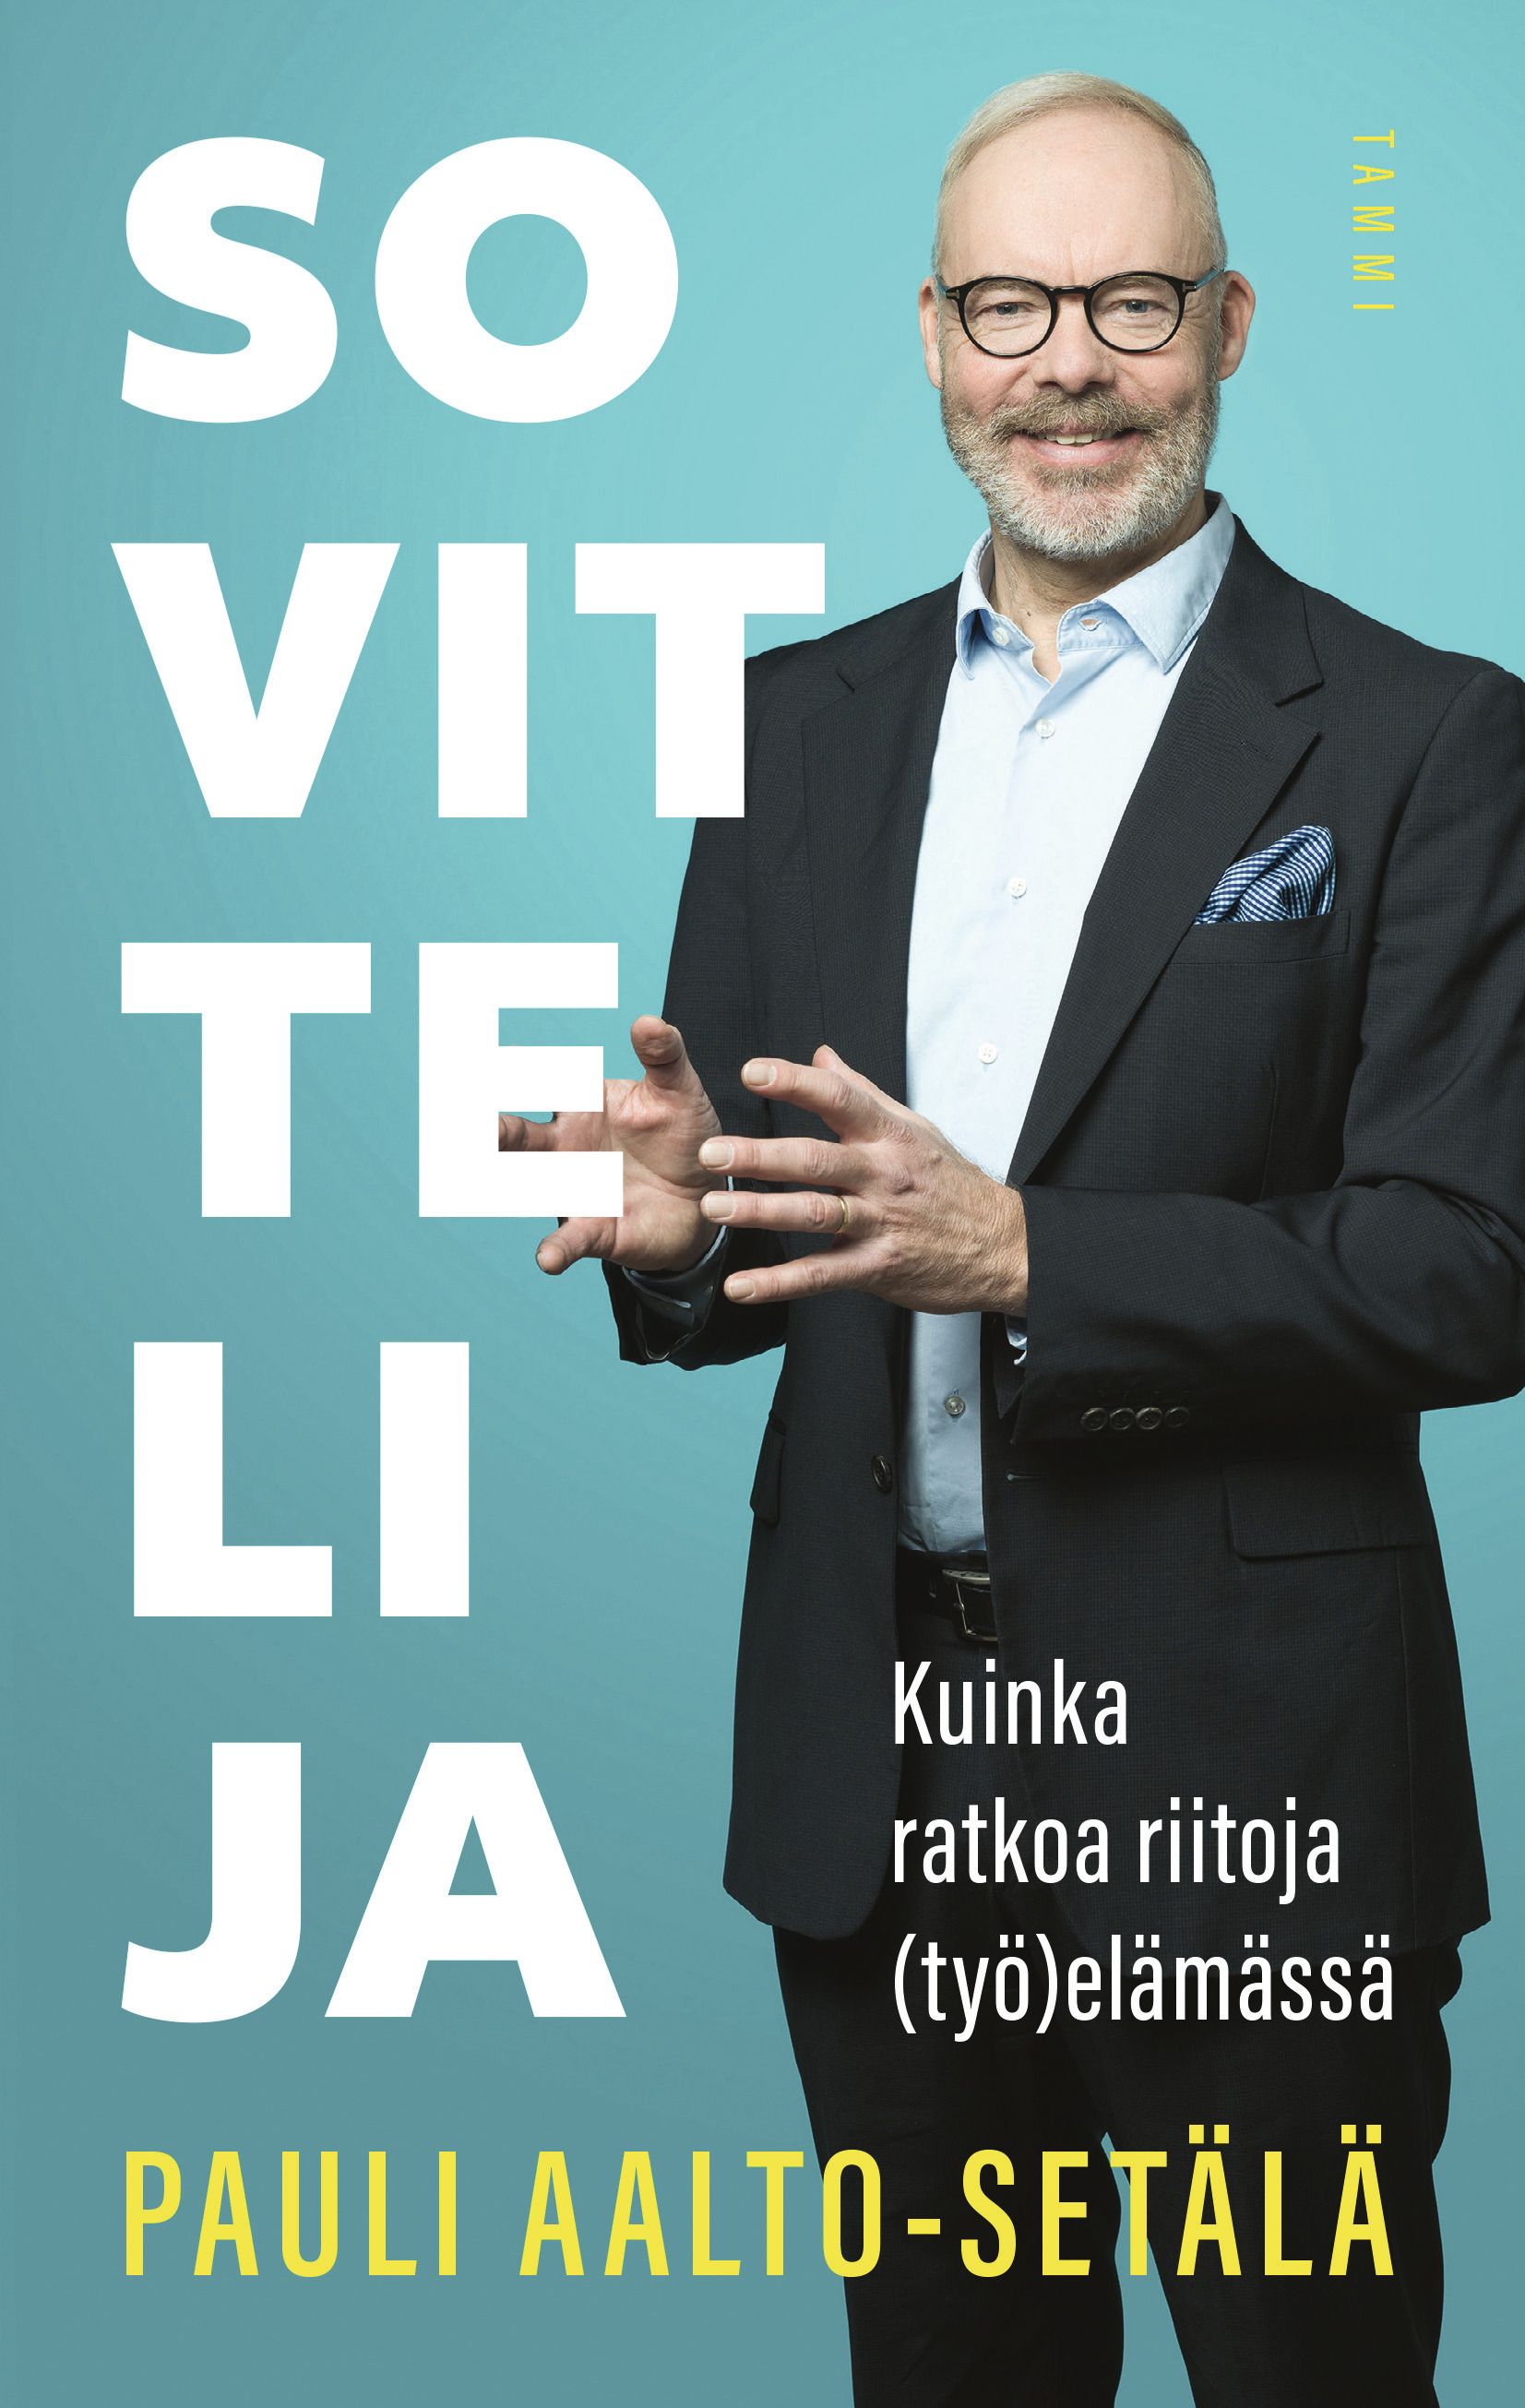 Kirjailijan Pauli Aalto-Setälä uusi kirja Sovittelija : kuinka ratkoa riitoja (työ)elämässä (UUSI)